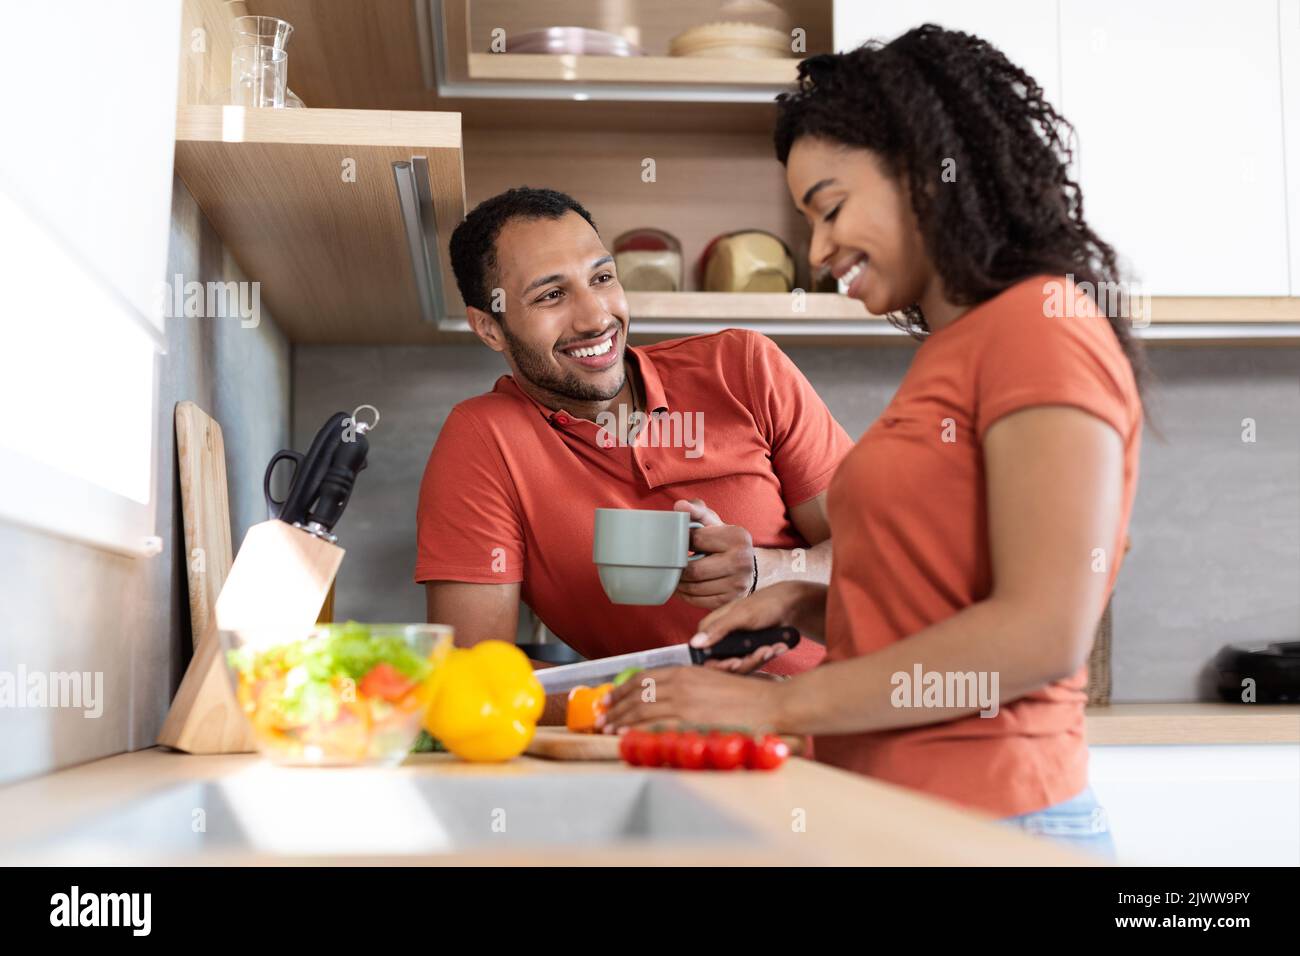 Fröhliches junges schwarzes Paar in gleichen T-Shirts, die reden, Frau bereitet Salat vor, Mann trinkt Kaffee Stockfoto